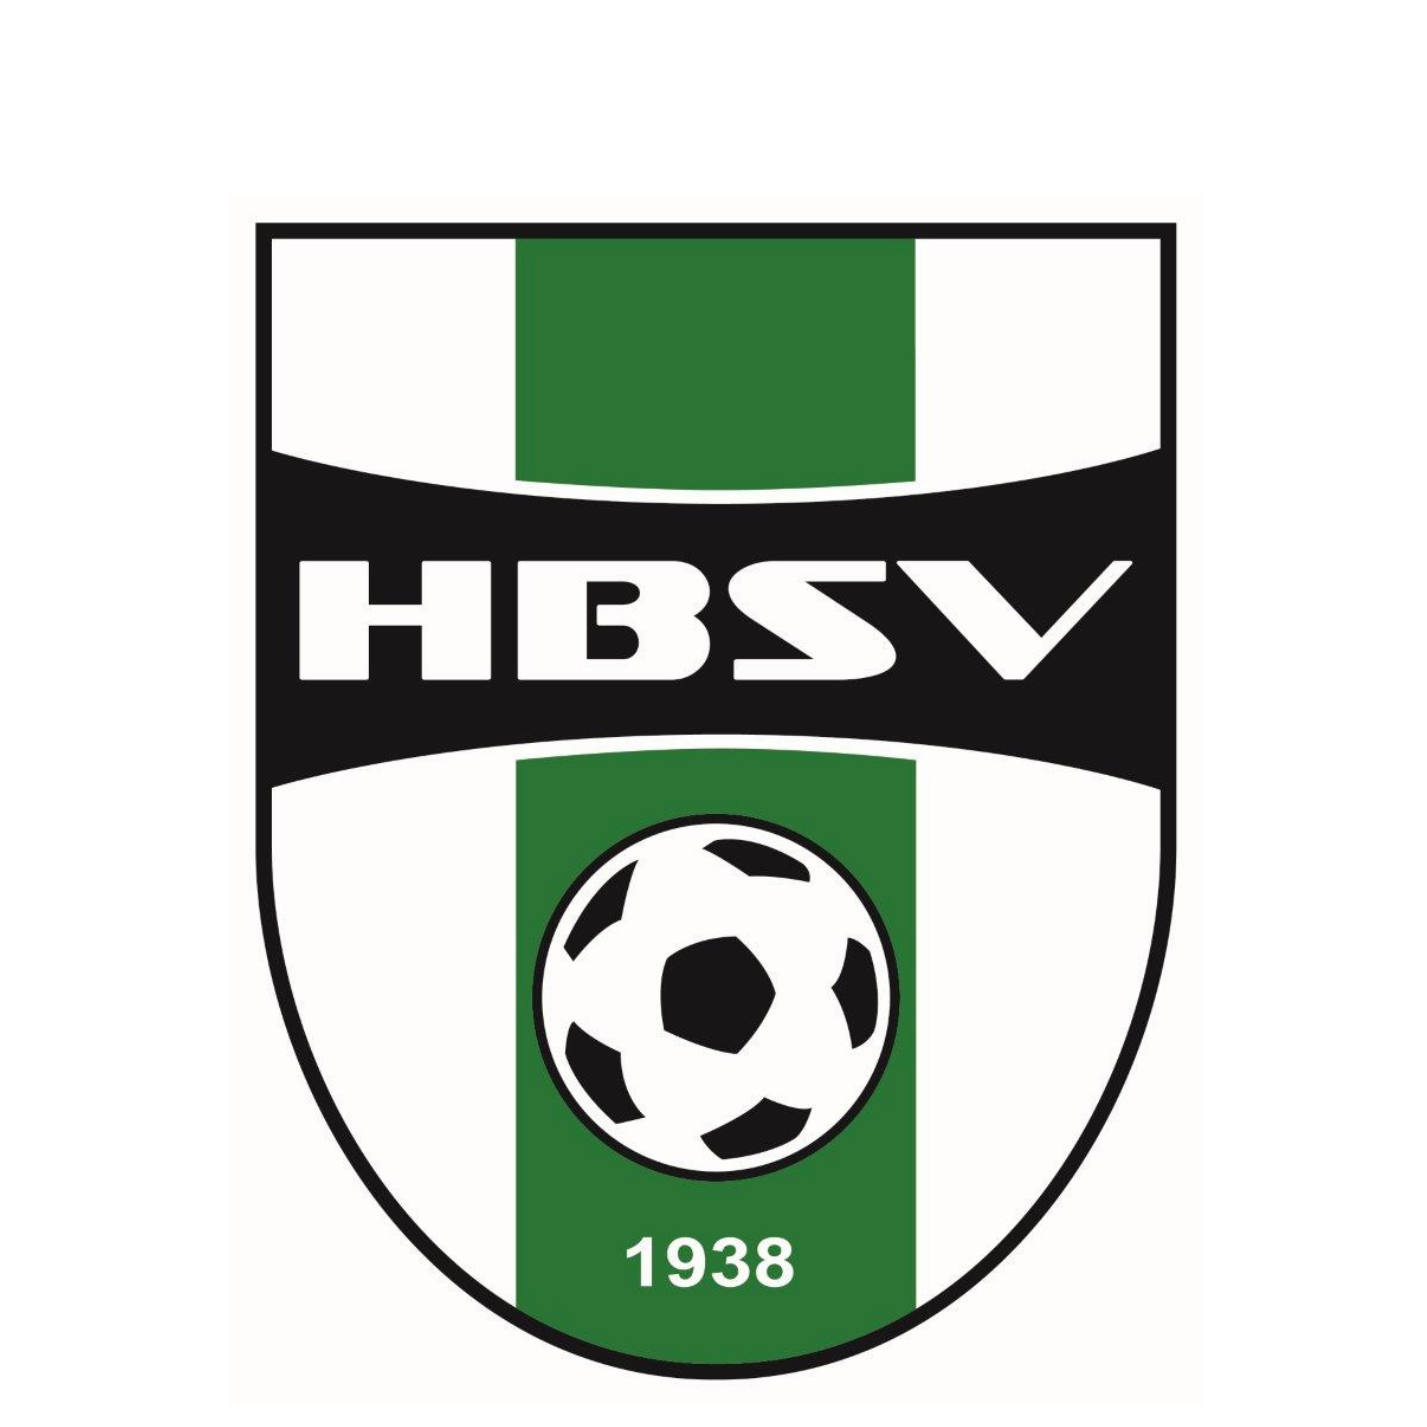 Profile image of venue HBSV